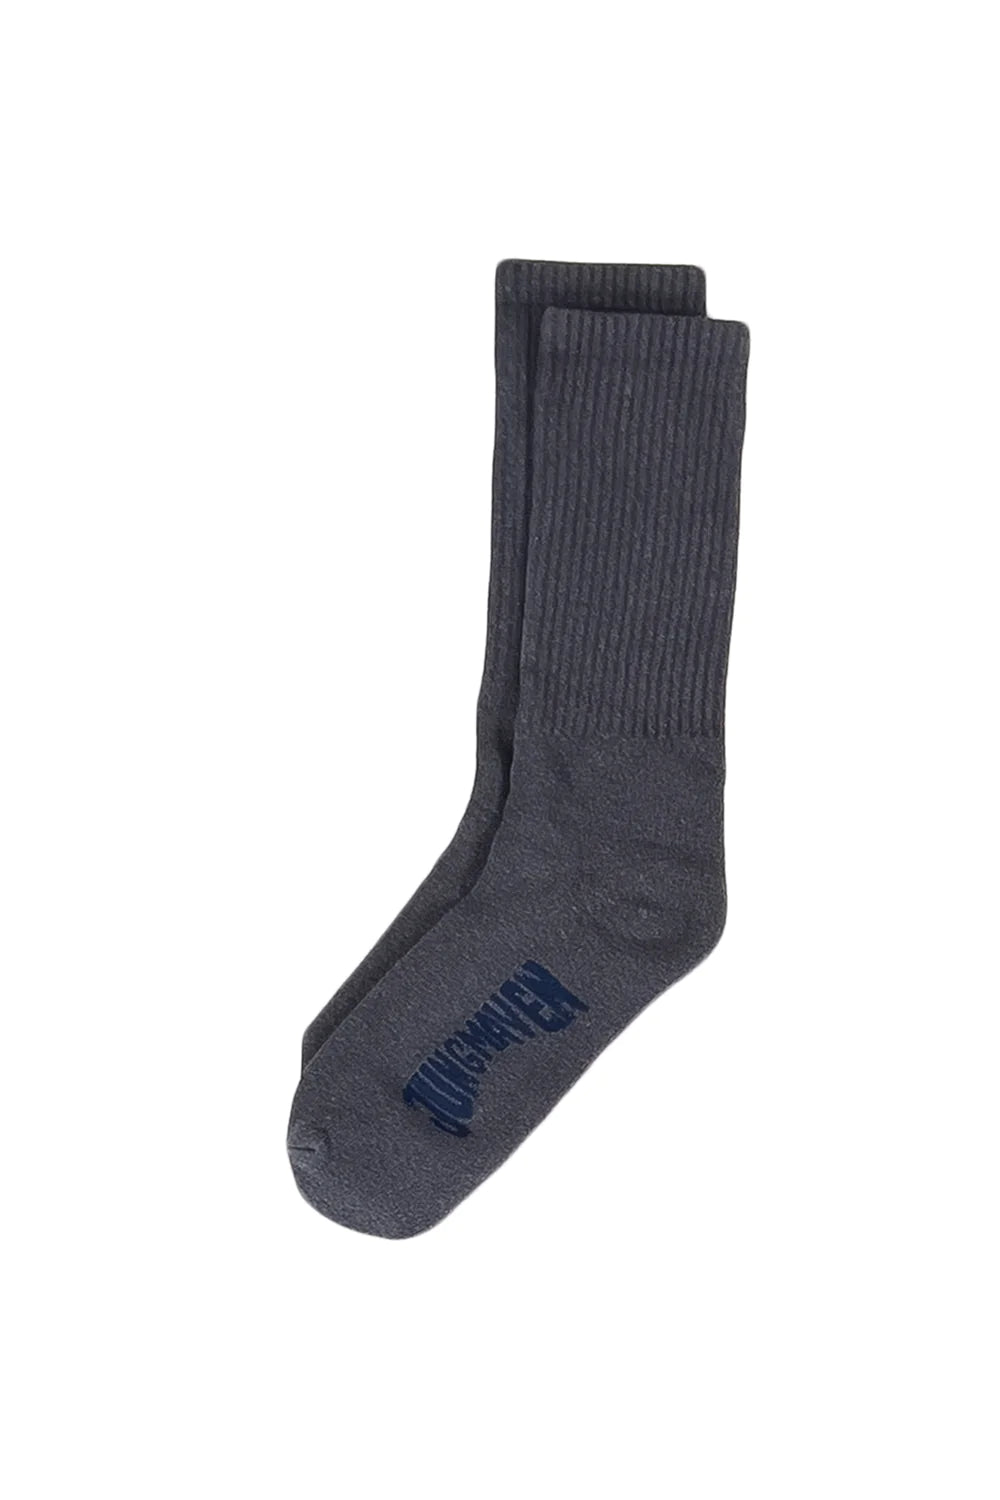 – + hoc penticton socks tights ad